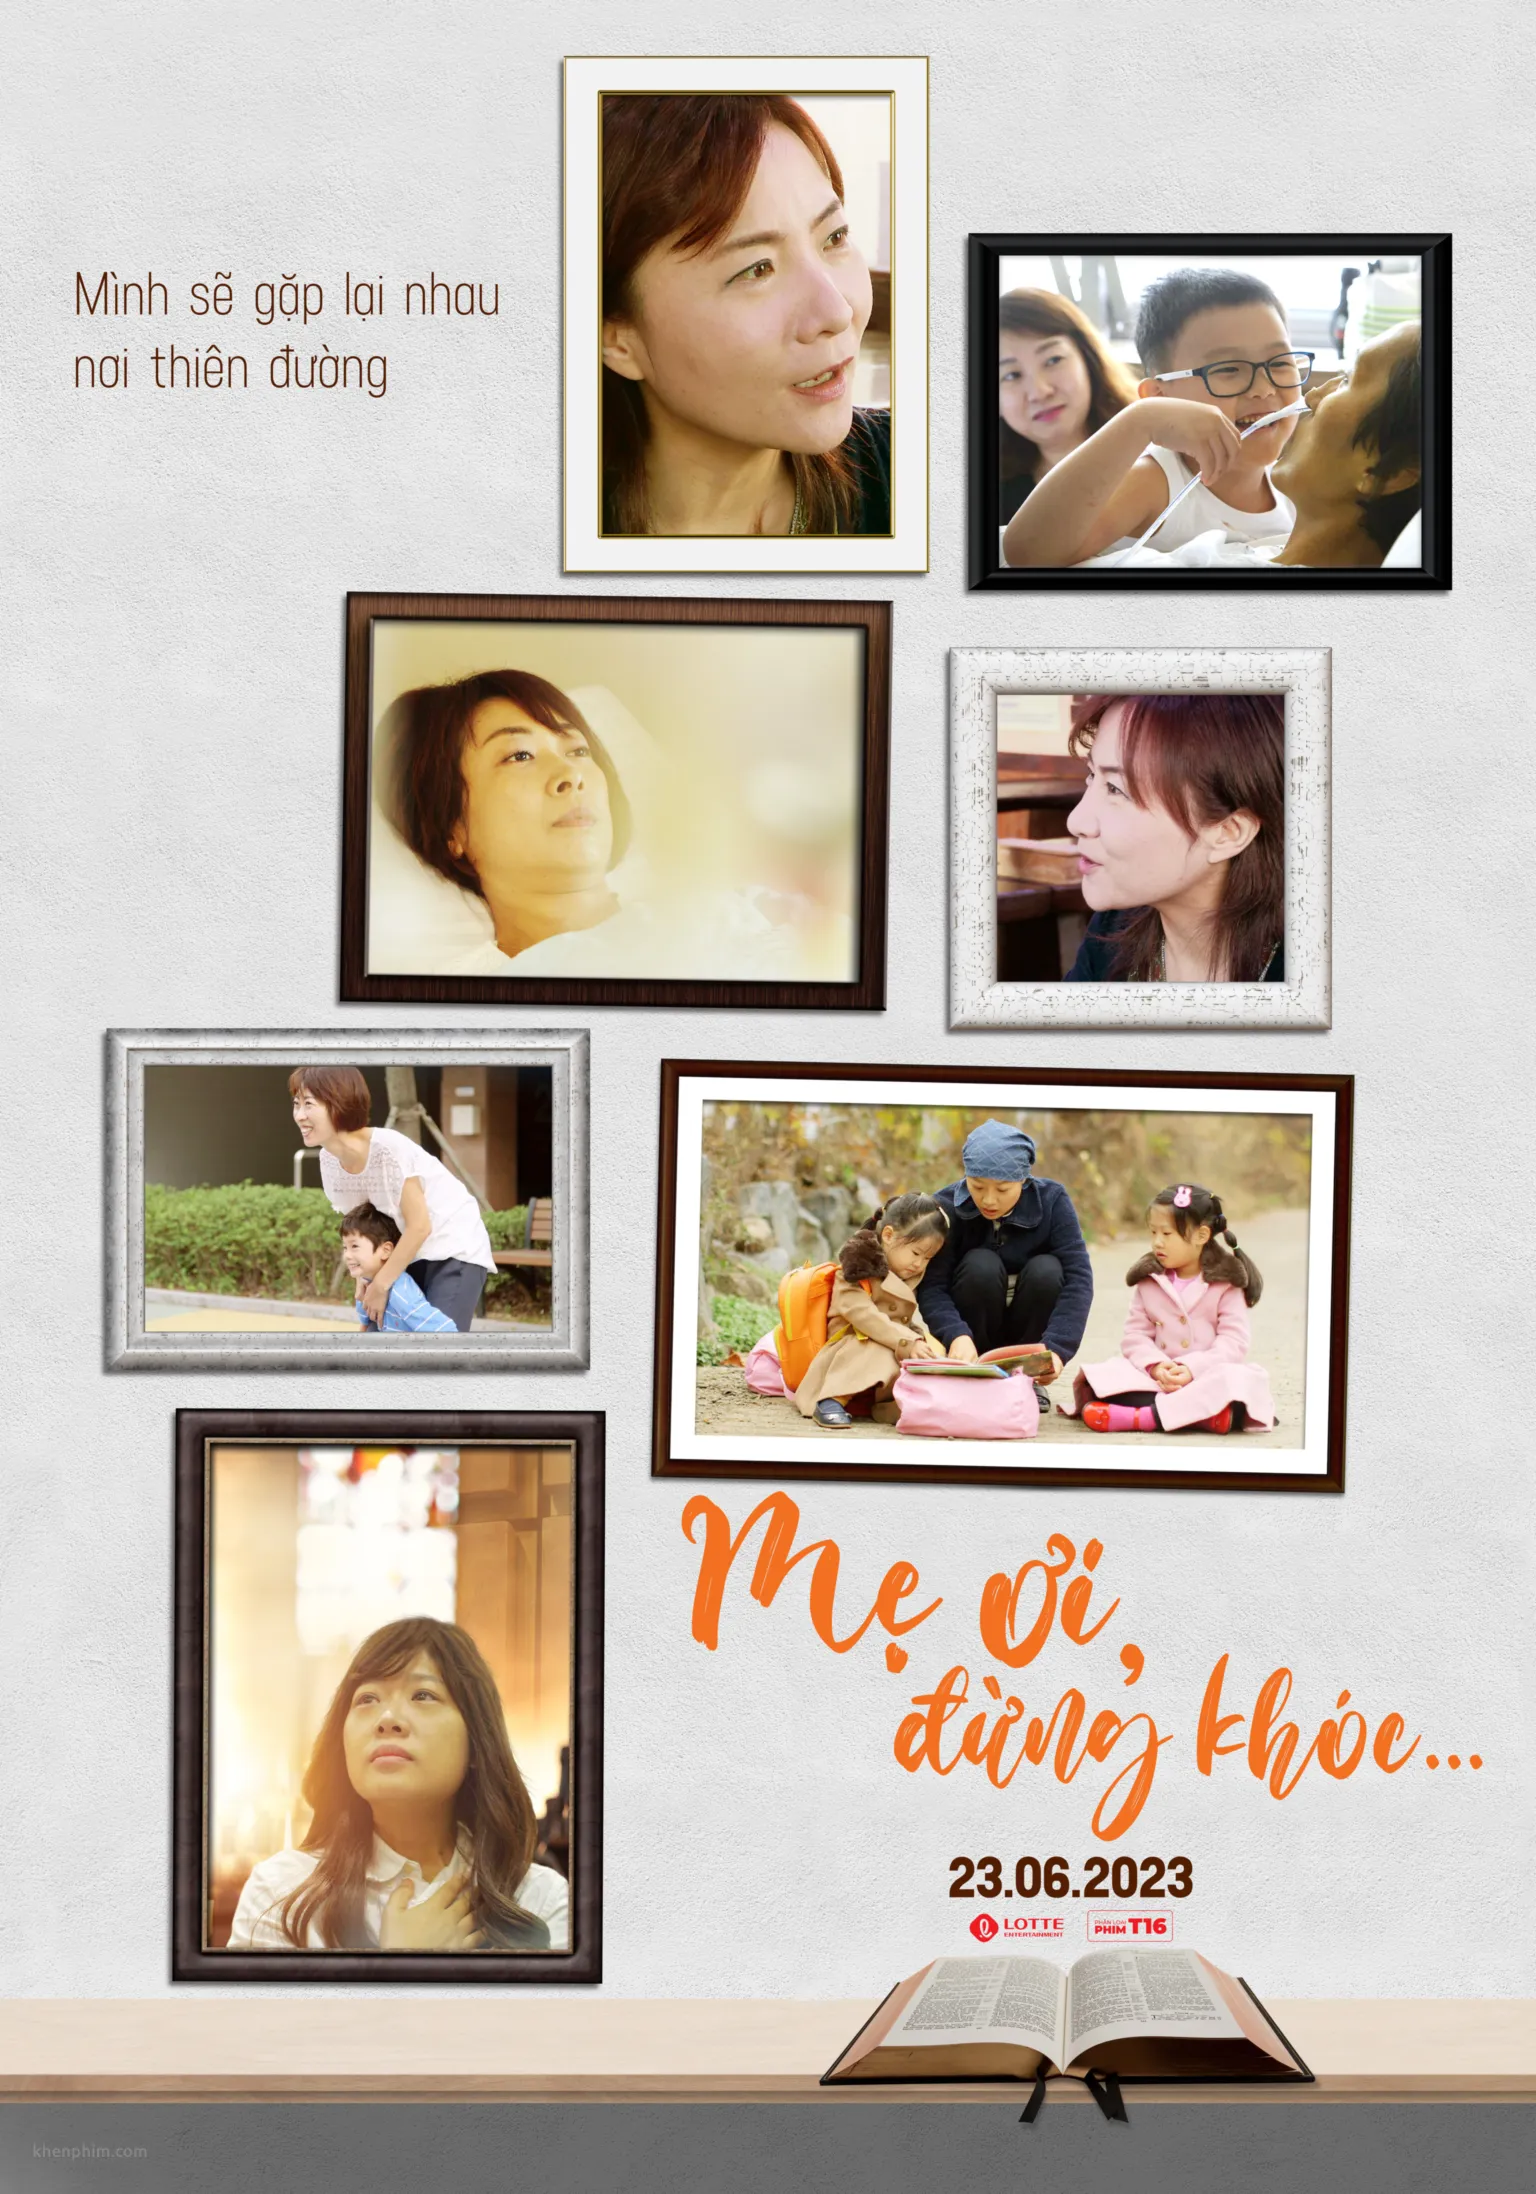 Poster phim "Mẹ ơi, đừng khóc..."